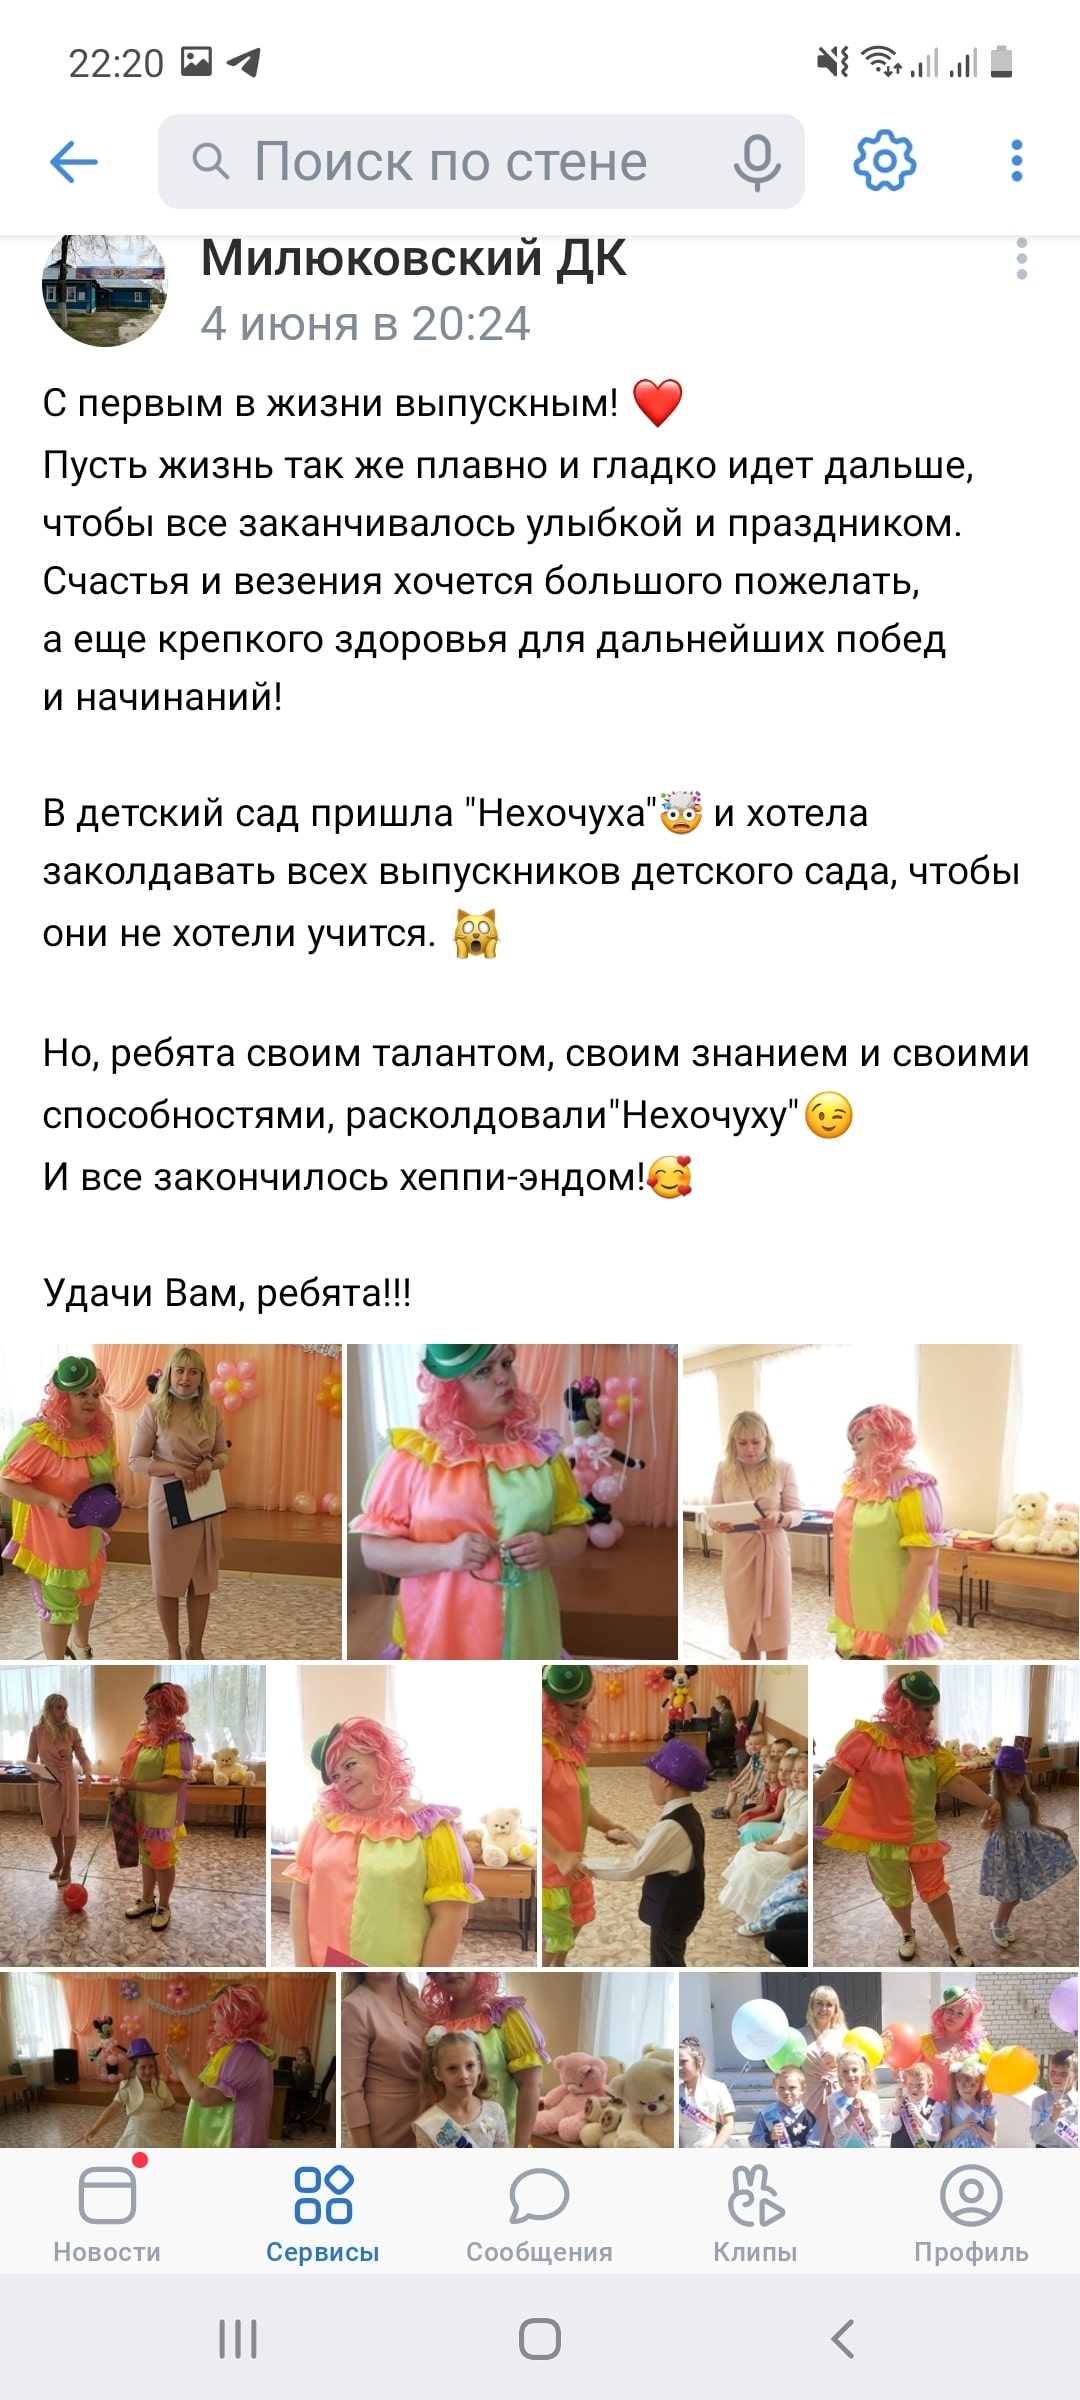 Тематические мероприятия, посвященные Дню рождения А.С. Пушкина в Остаповском сельском поселении